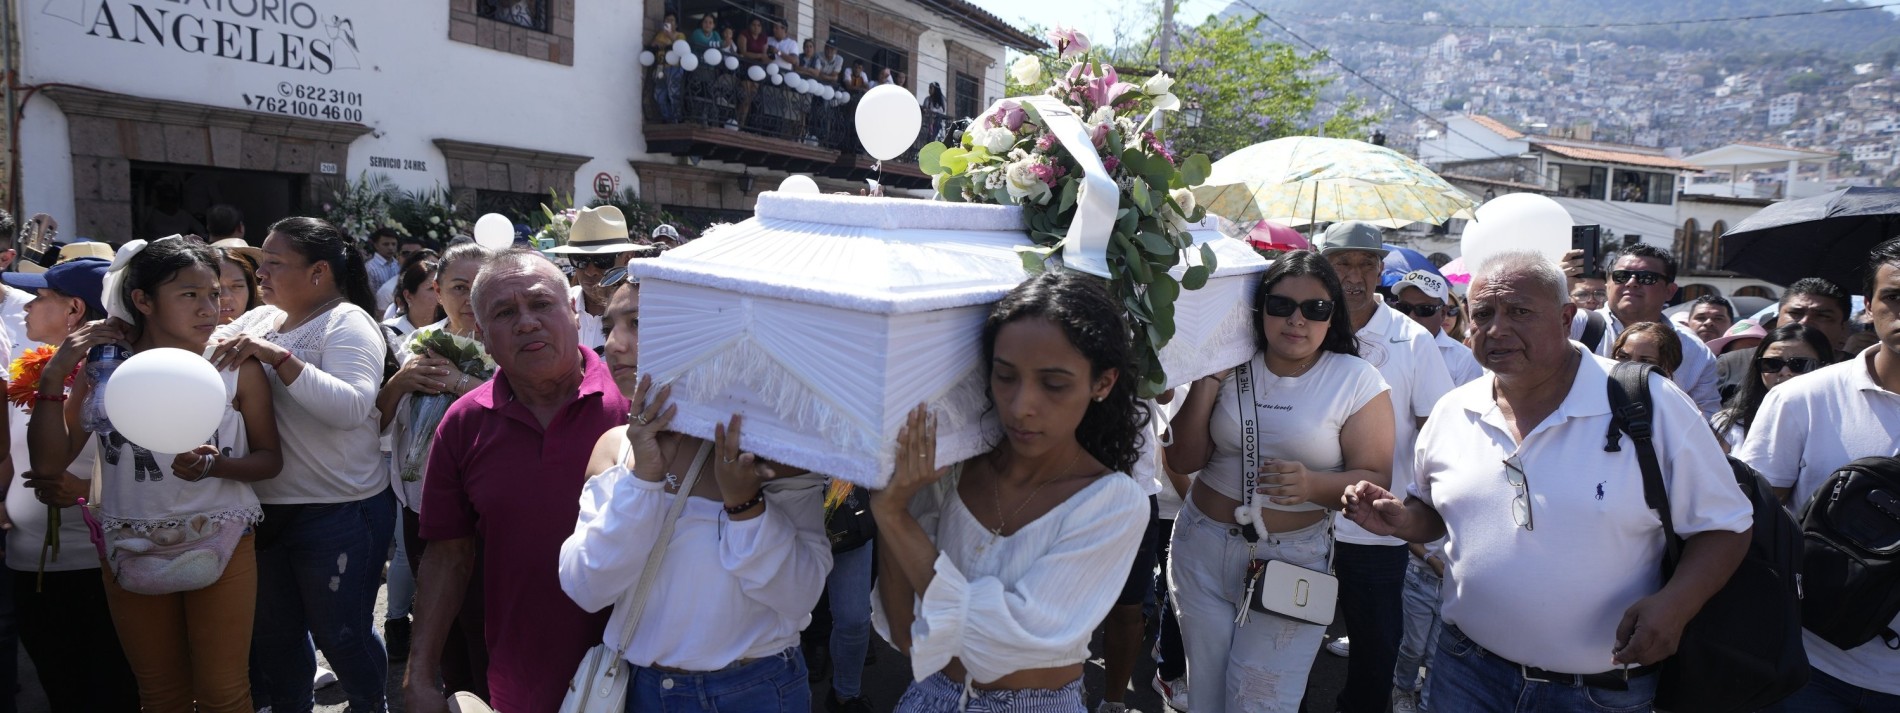 Dorfbewohner in Mexiko sollen Selbstjustiz an Mördern von Mädchen verübt haben